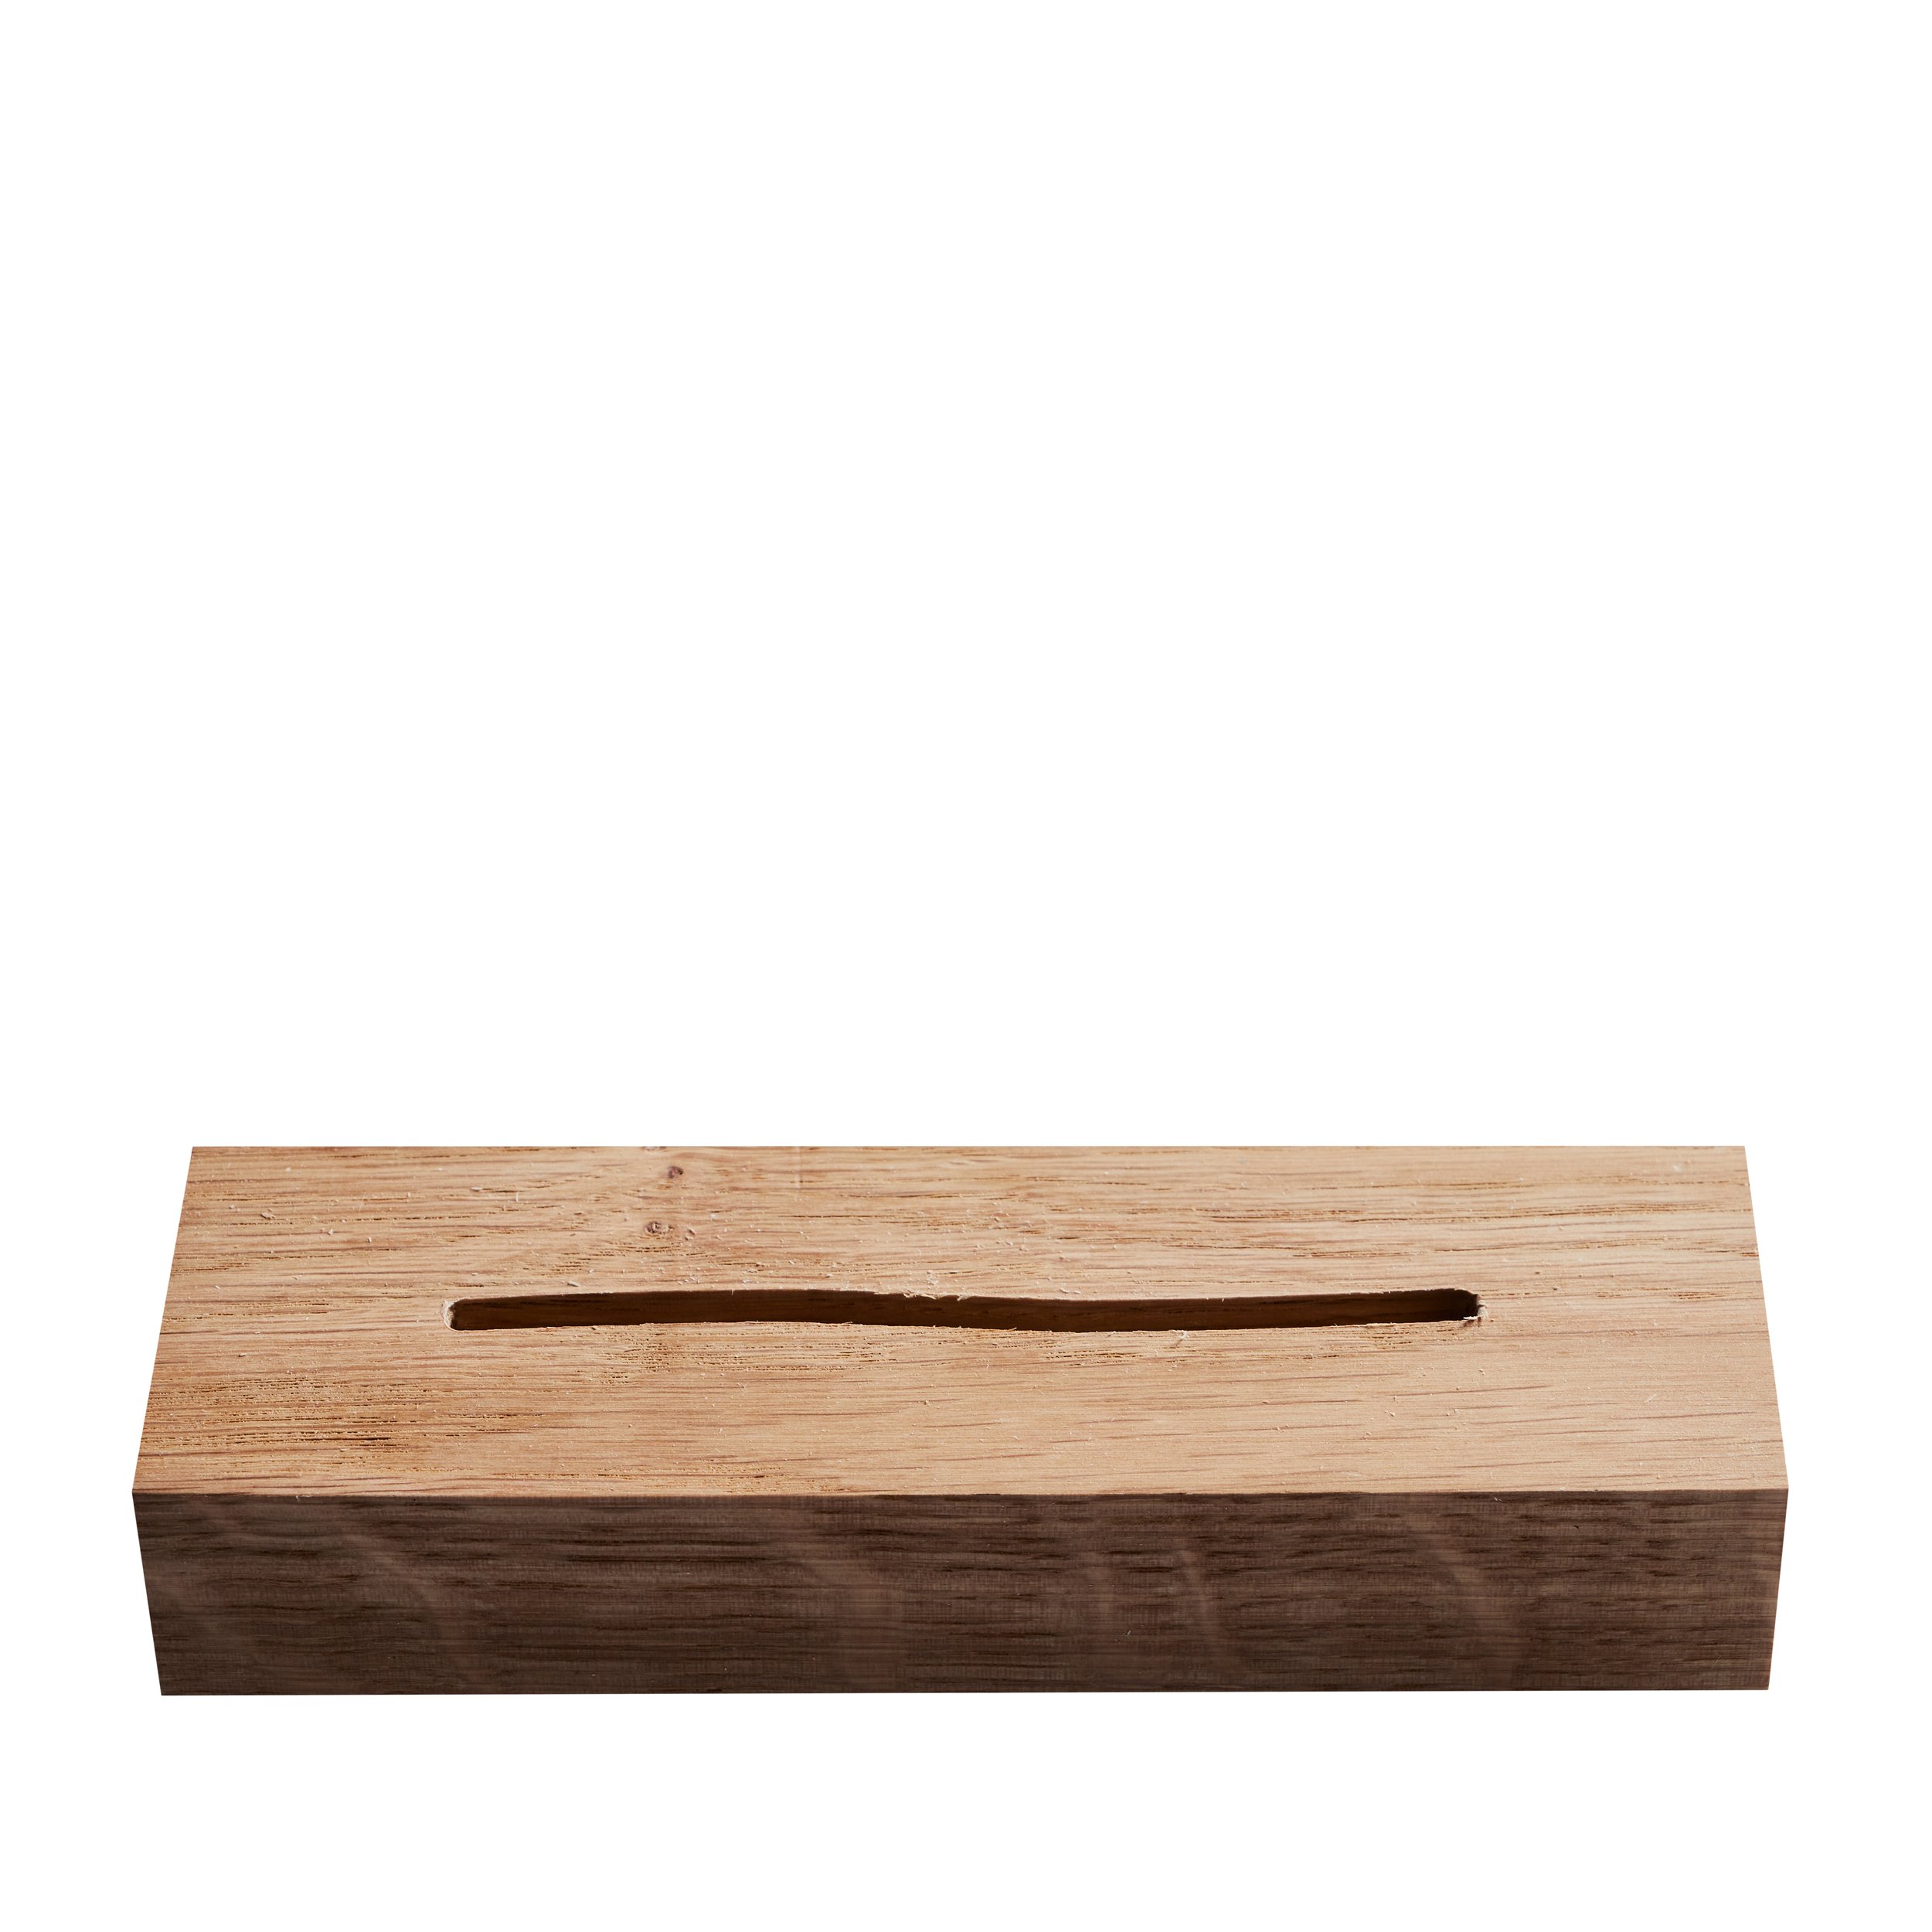 Roble, A7, Formato vertical Soporte metacrilato con base de madera